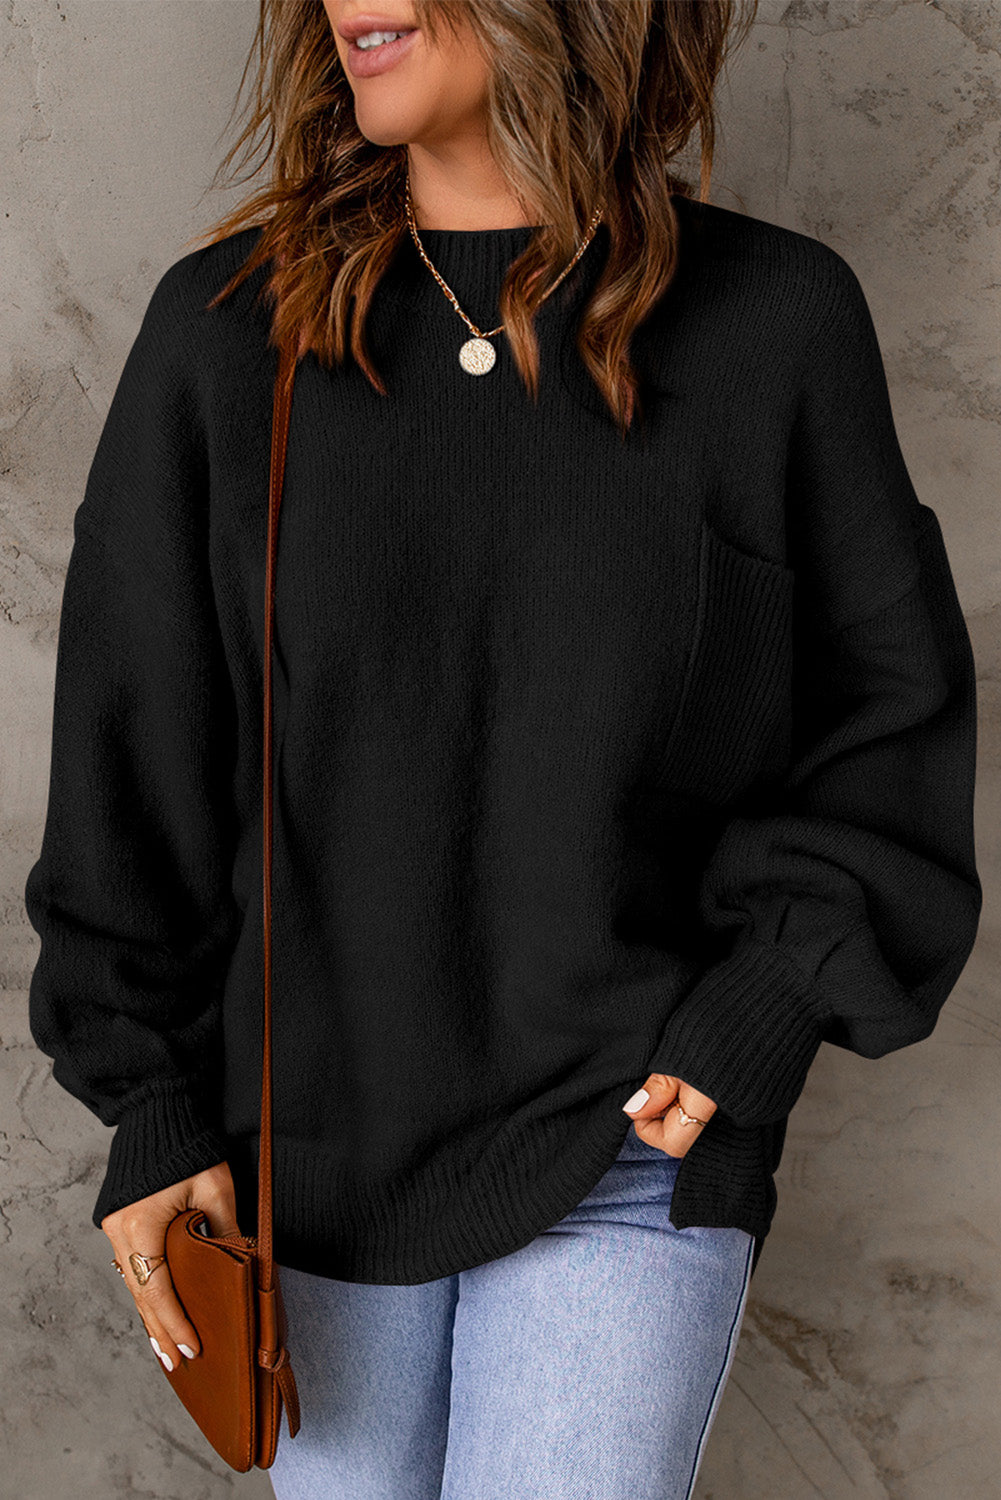 Crni jednobojni pulover s džepovima s puf rukavima